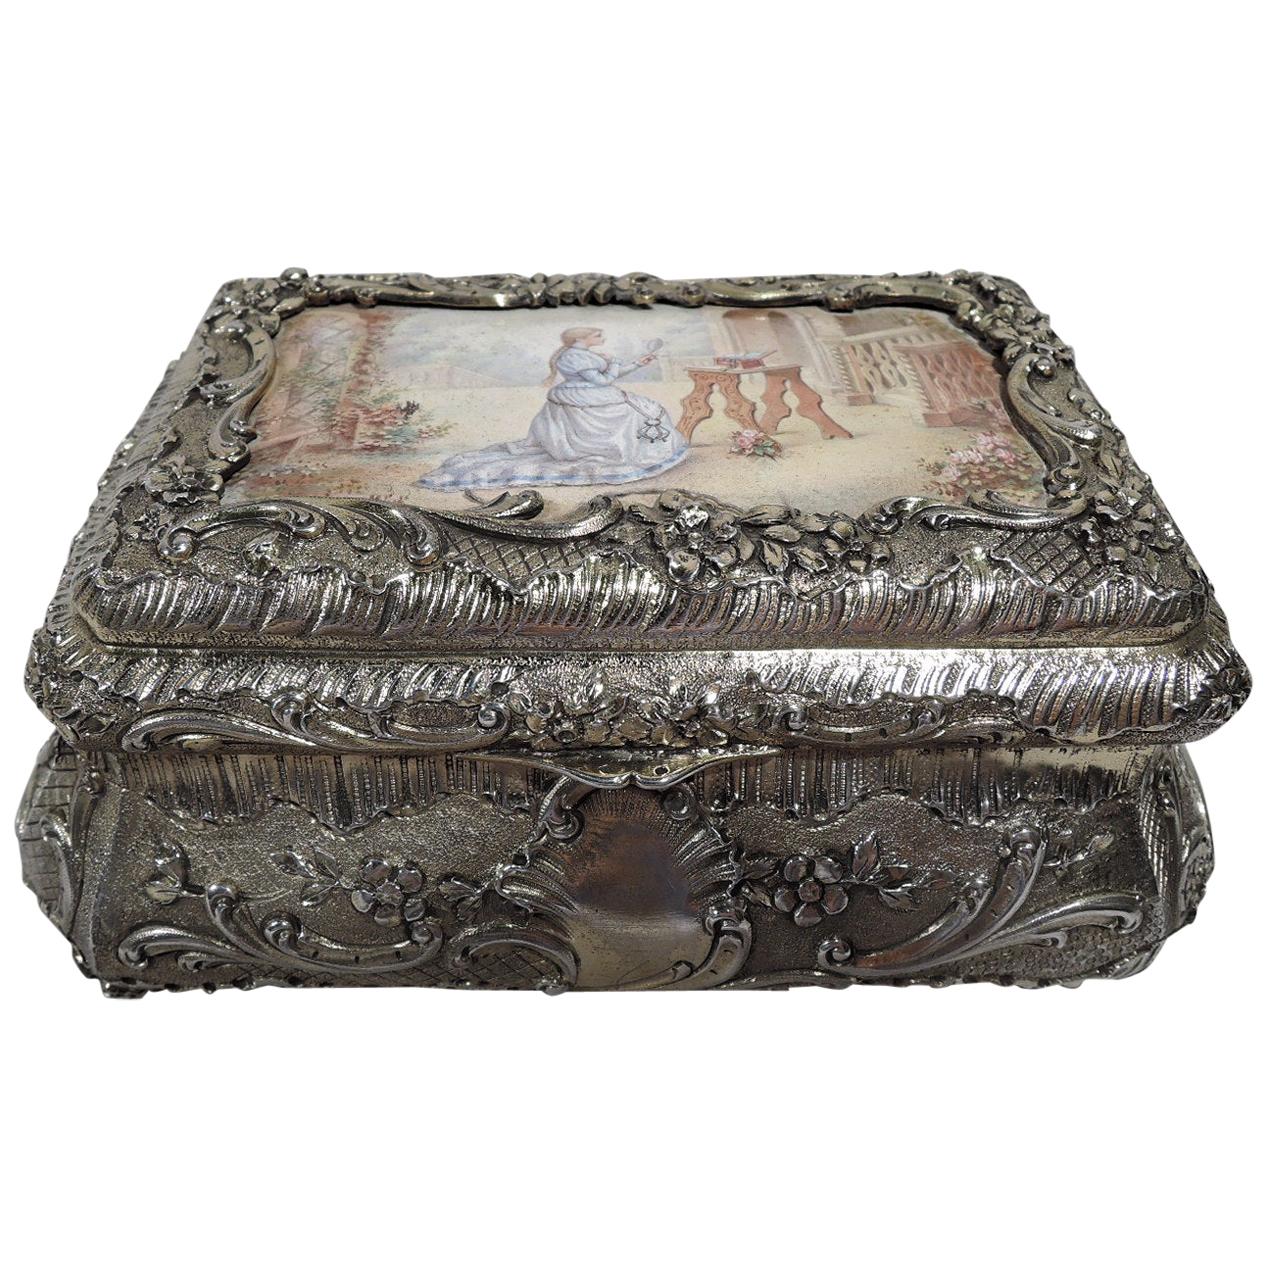 Antique French Renaissance Revival Silver Gilt and Enamel Casket Box